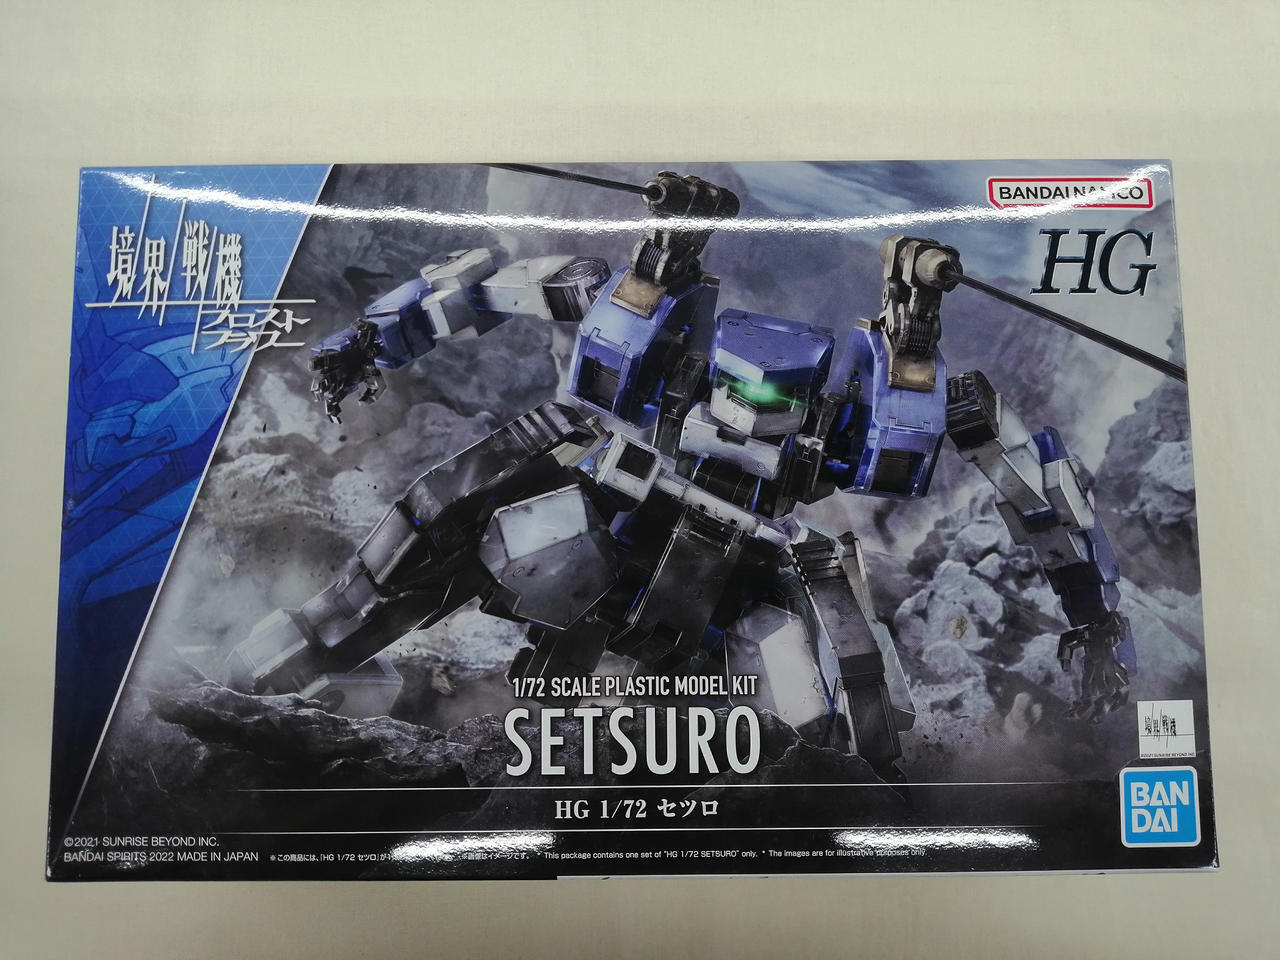 Bandai Setsuro Hg plastic model Kit